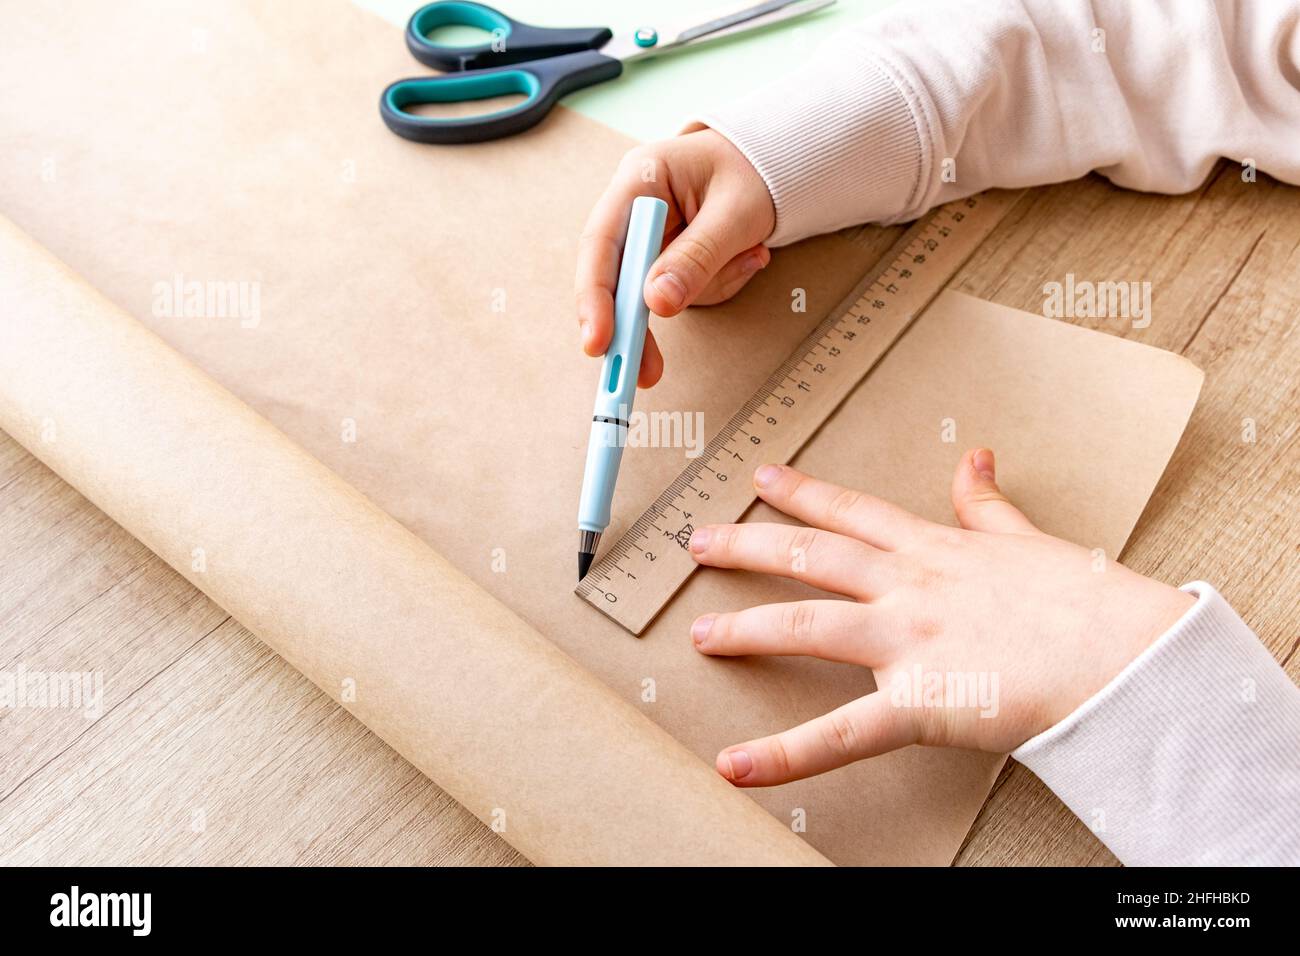 Primo piano della mano del bambino in processo di schizzo con la matita su carta artigianale. Linea retta con righello. Artigianato e imballaggio da carta ecologica. Scuola Foto Stock